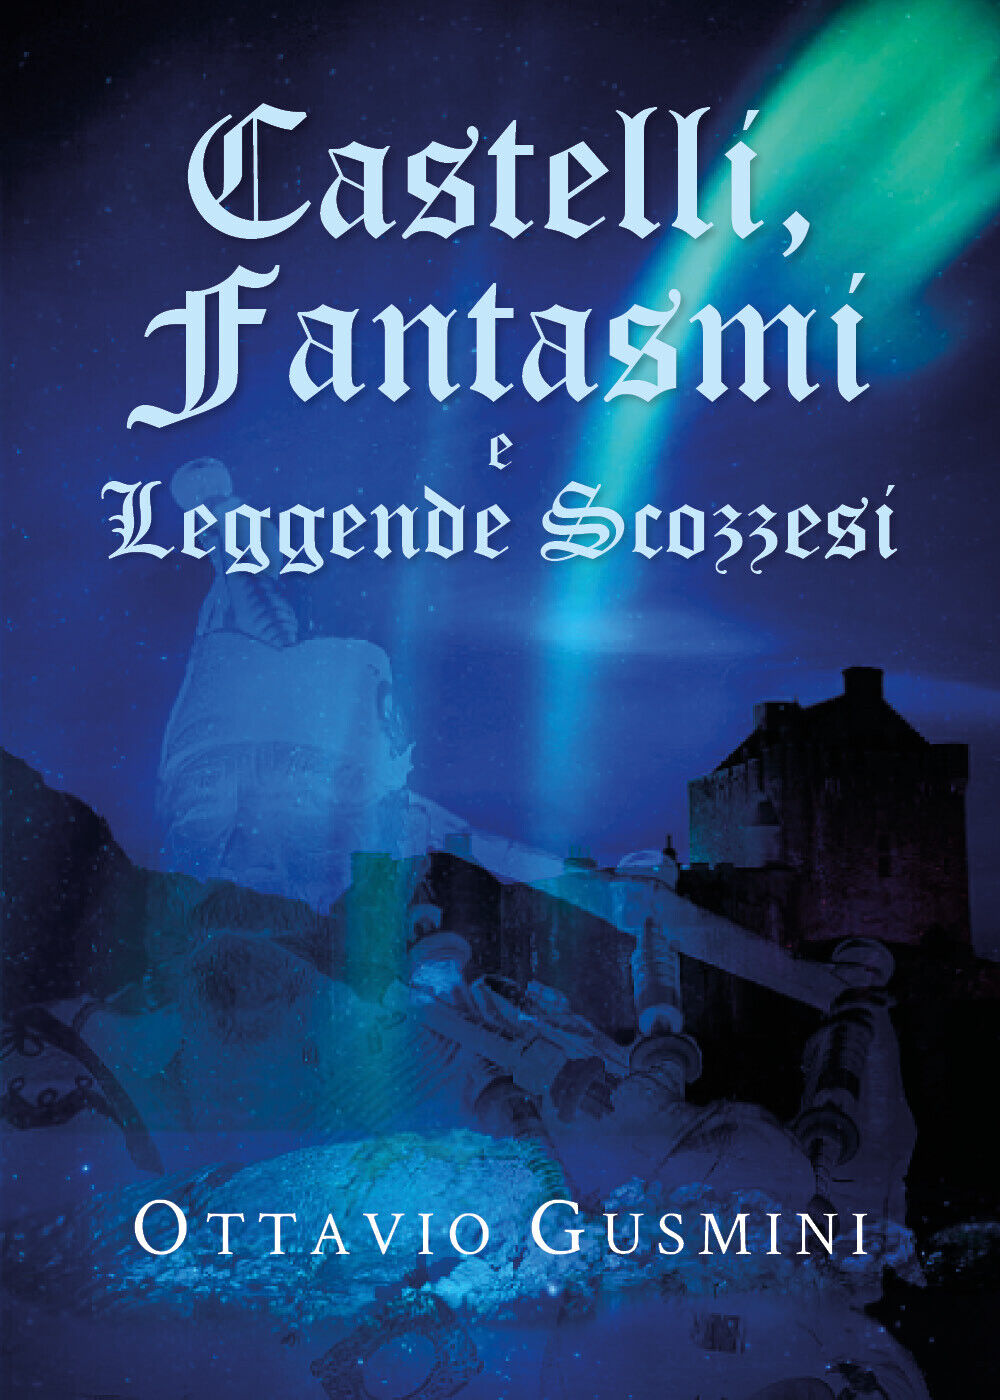 Castelli, Fantasmi e Leggende Scozzesi - Ottavio Gusmini,  Youcanprint - P